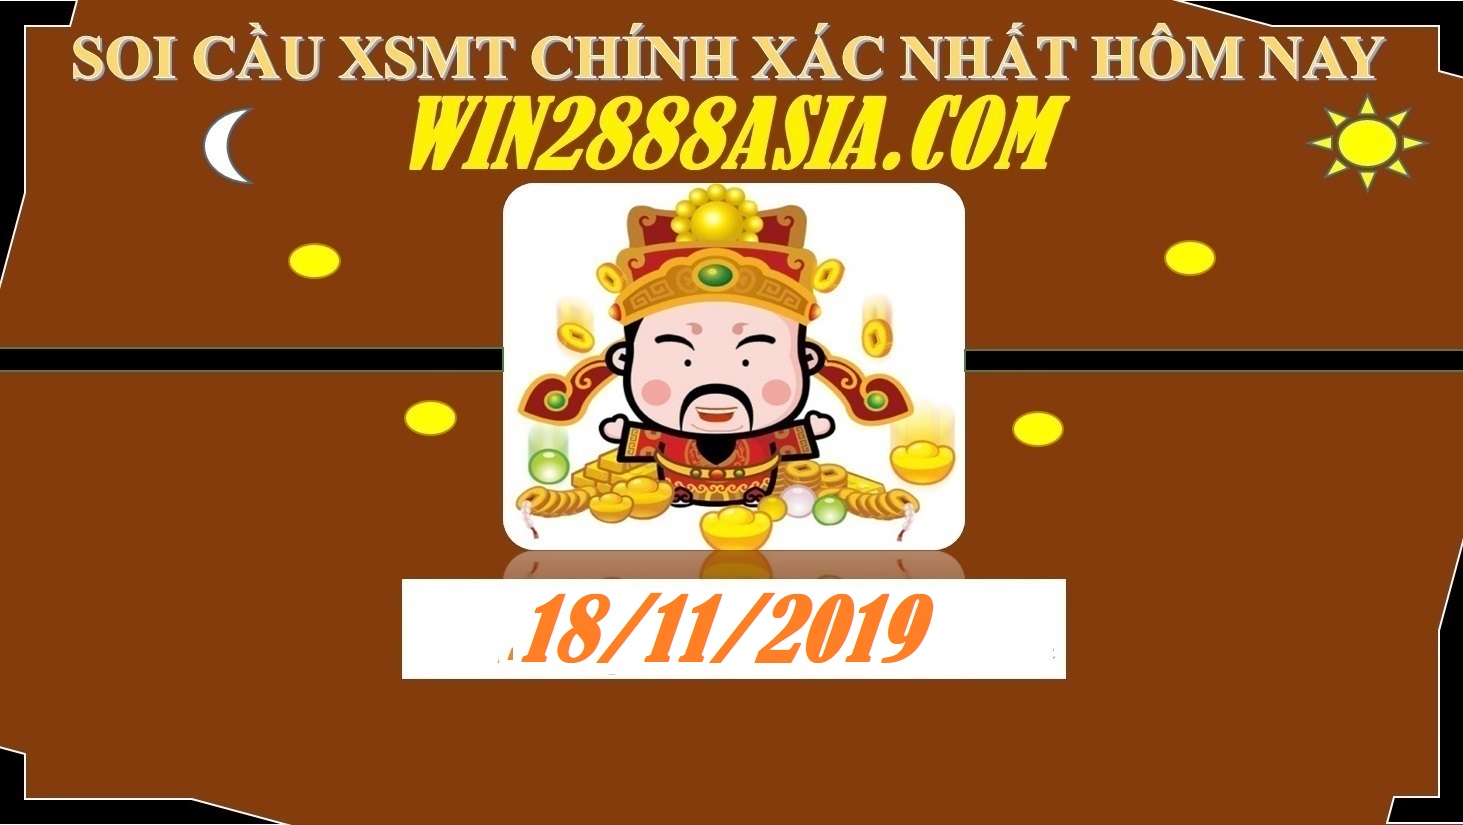 Soi cầu XSMT 18-11-2019 Win2888